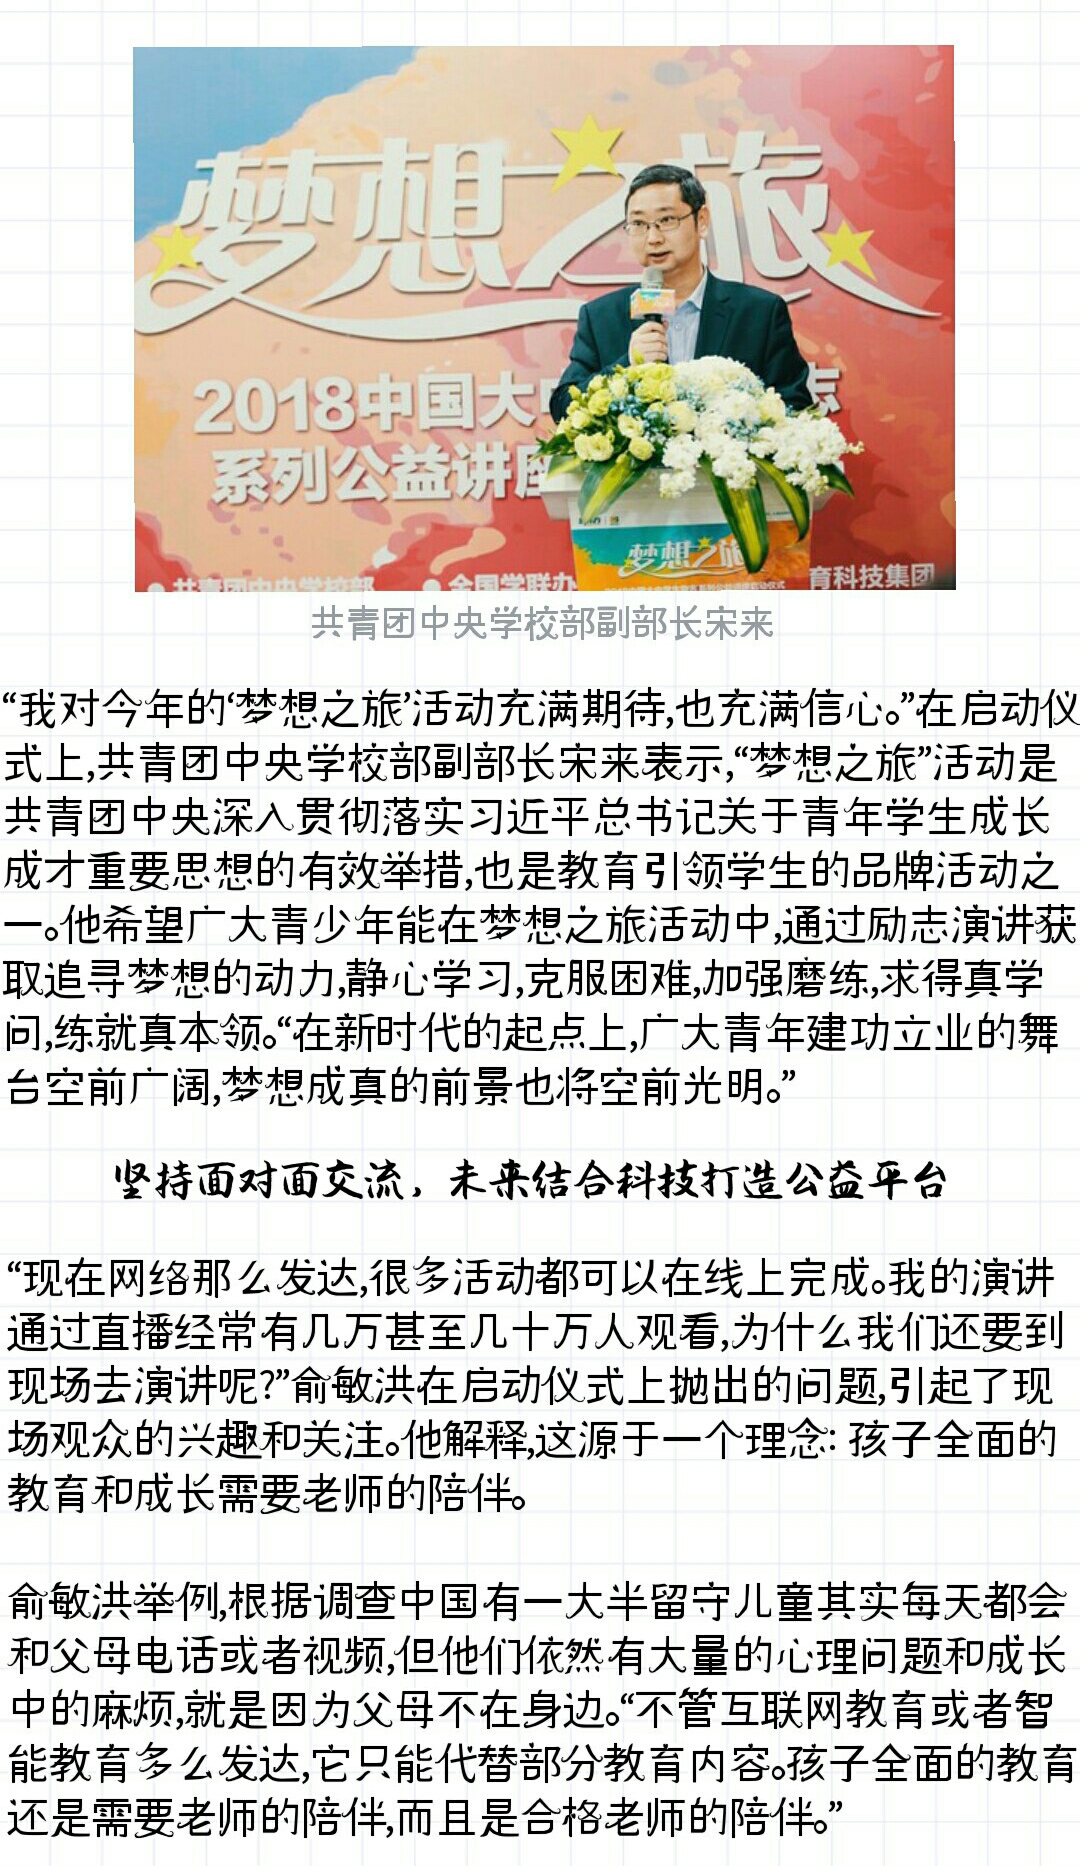 2018新东方梦想之旅启动仪式共青团中央学校部副部长宋来发言